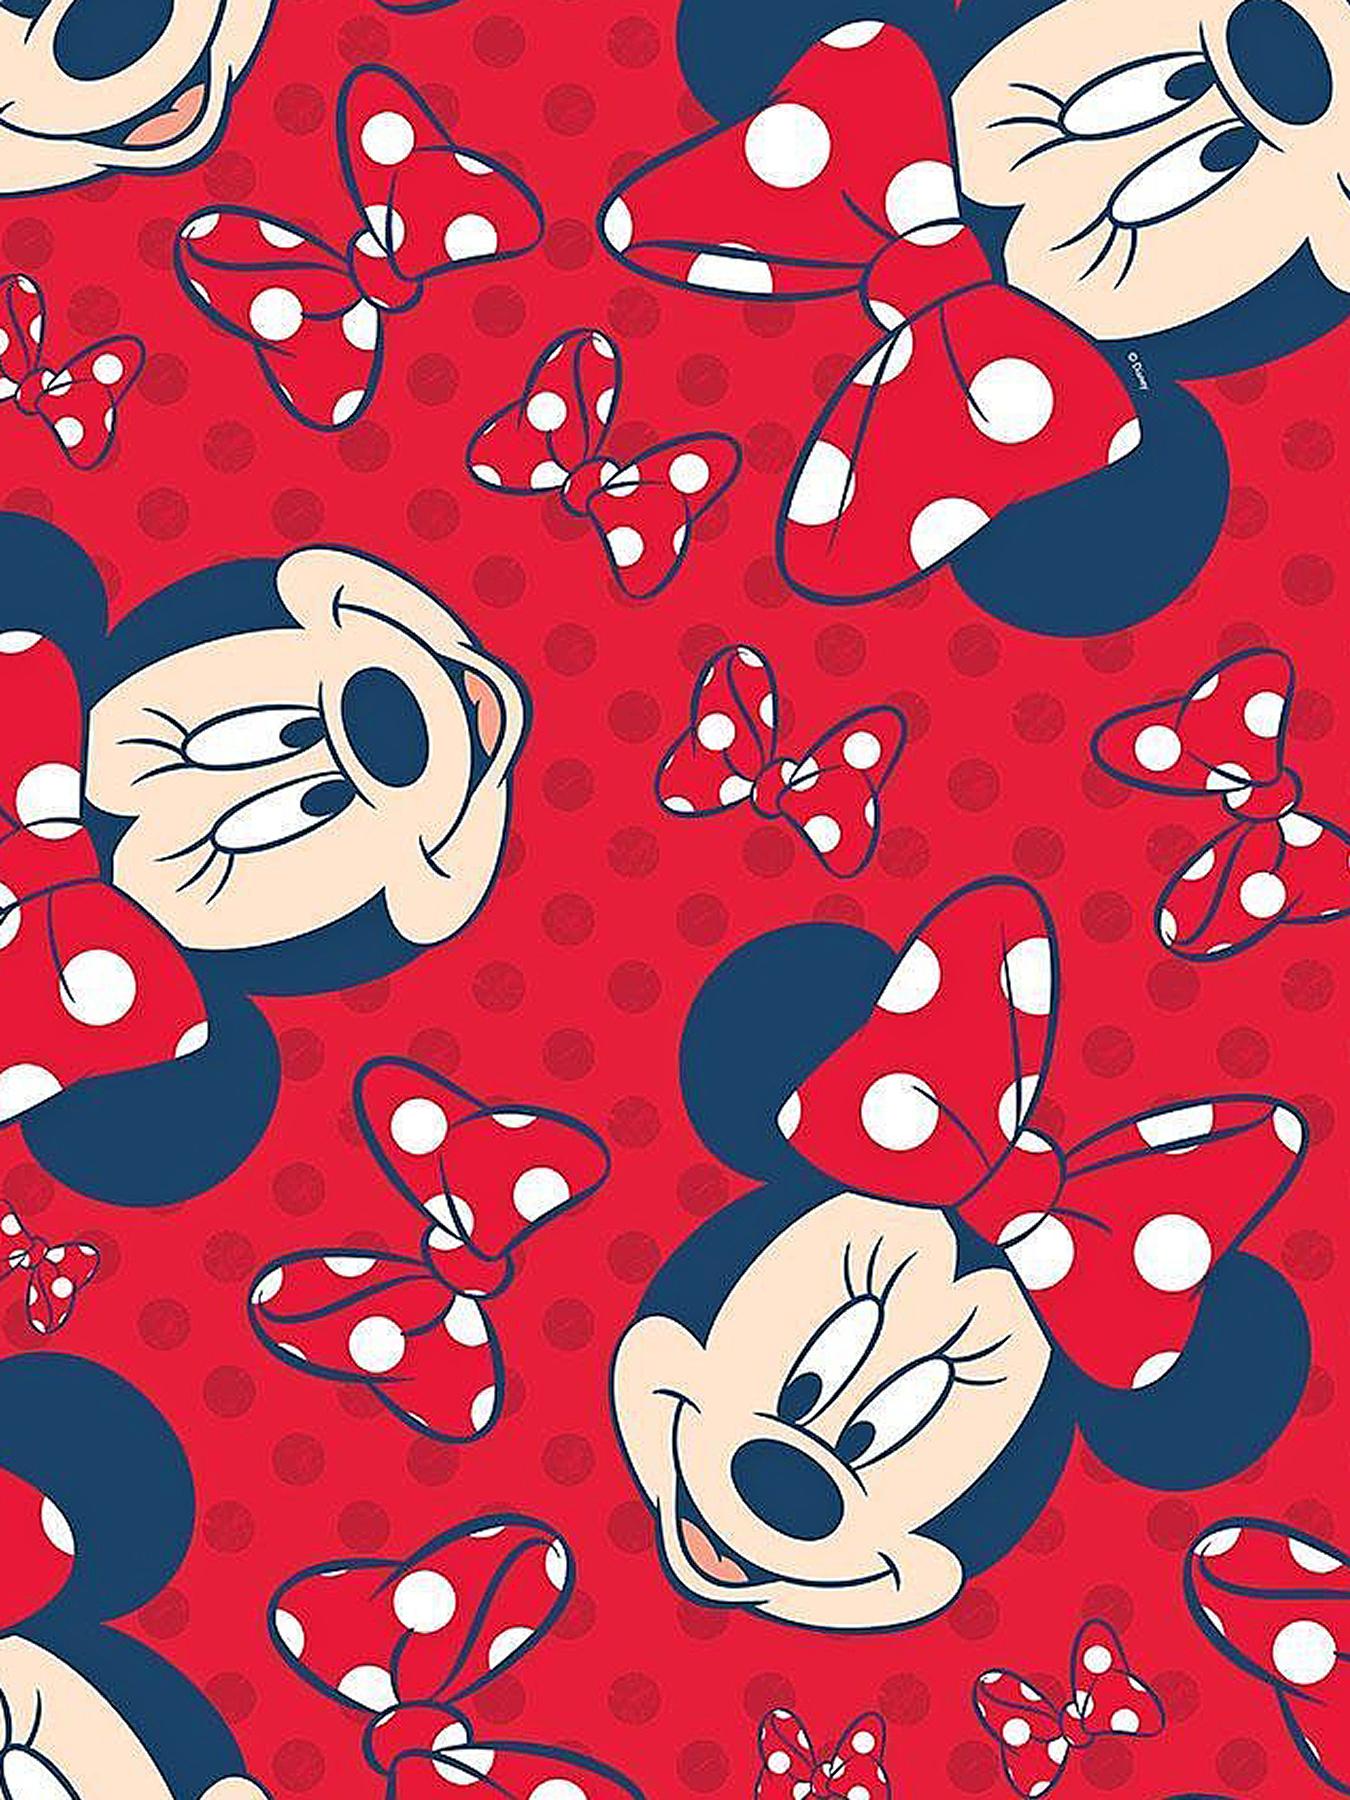 画像 可愛い Disney ミニーマウス Minnie Mouse Iphoneスマホ壁紙 ディズニー Naver まとめ